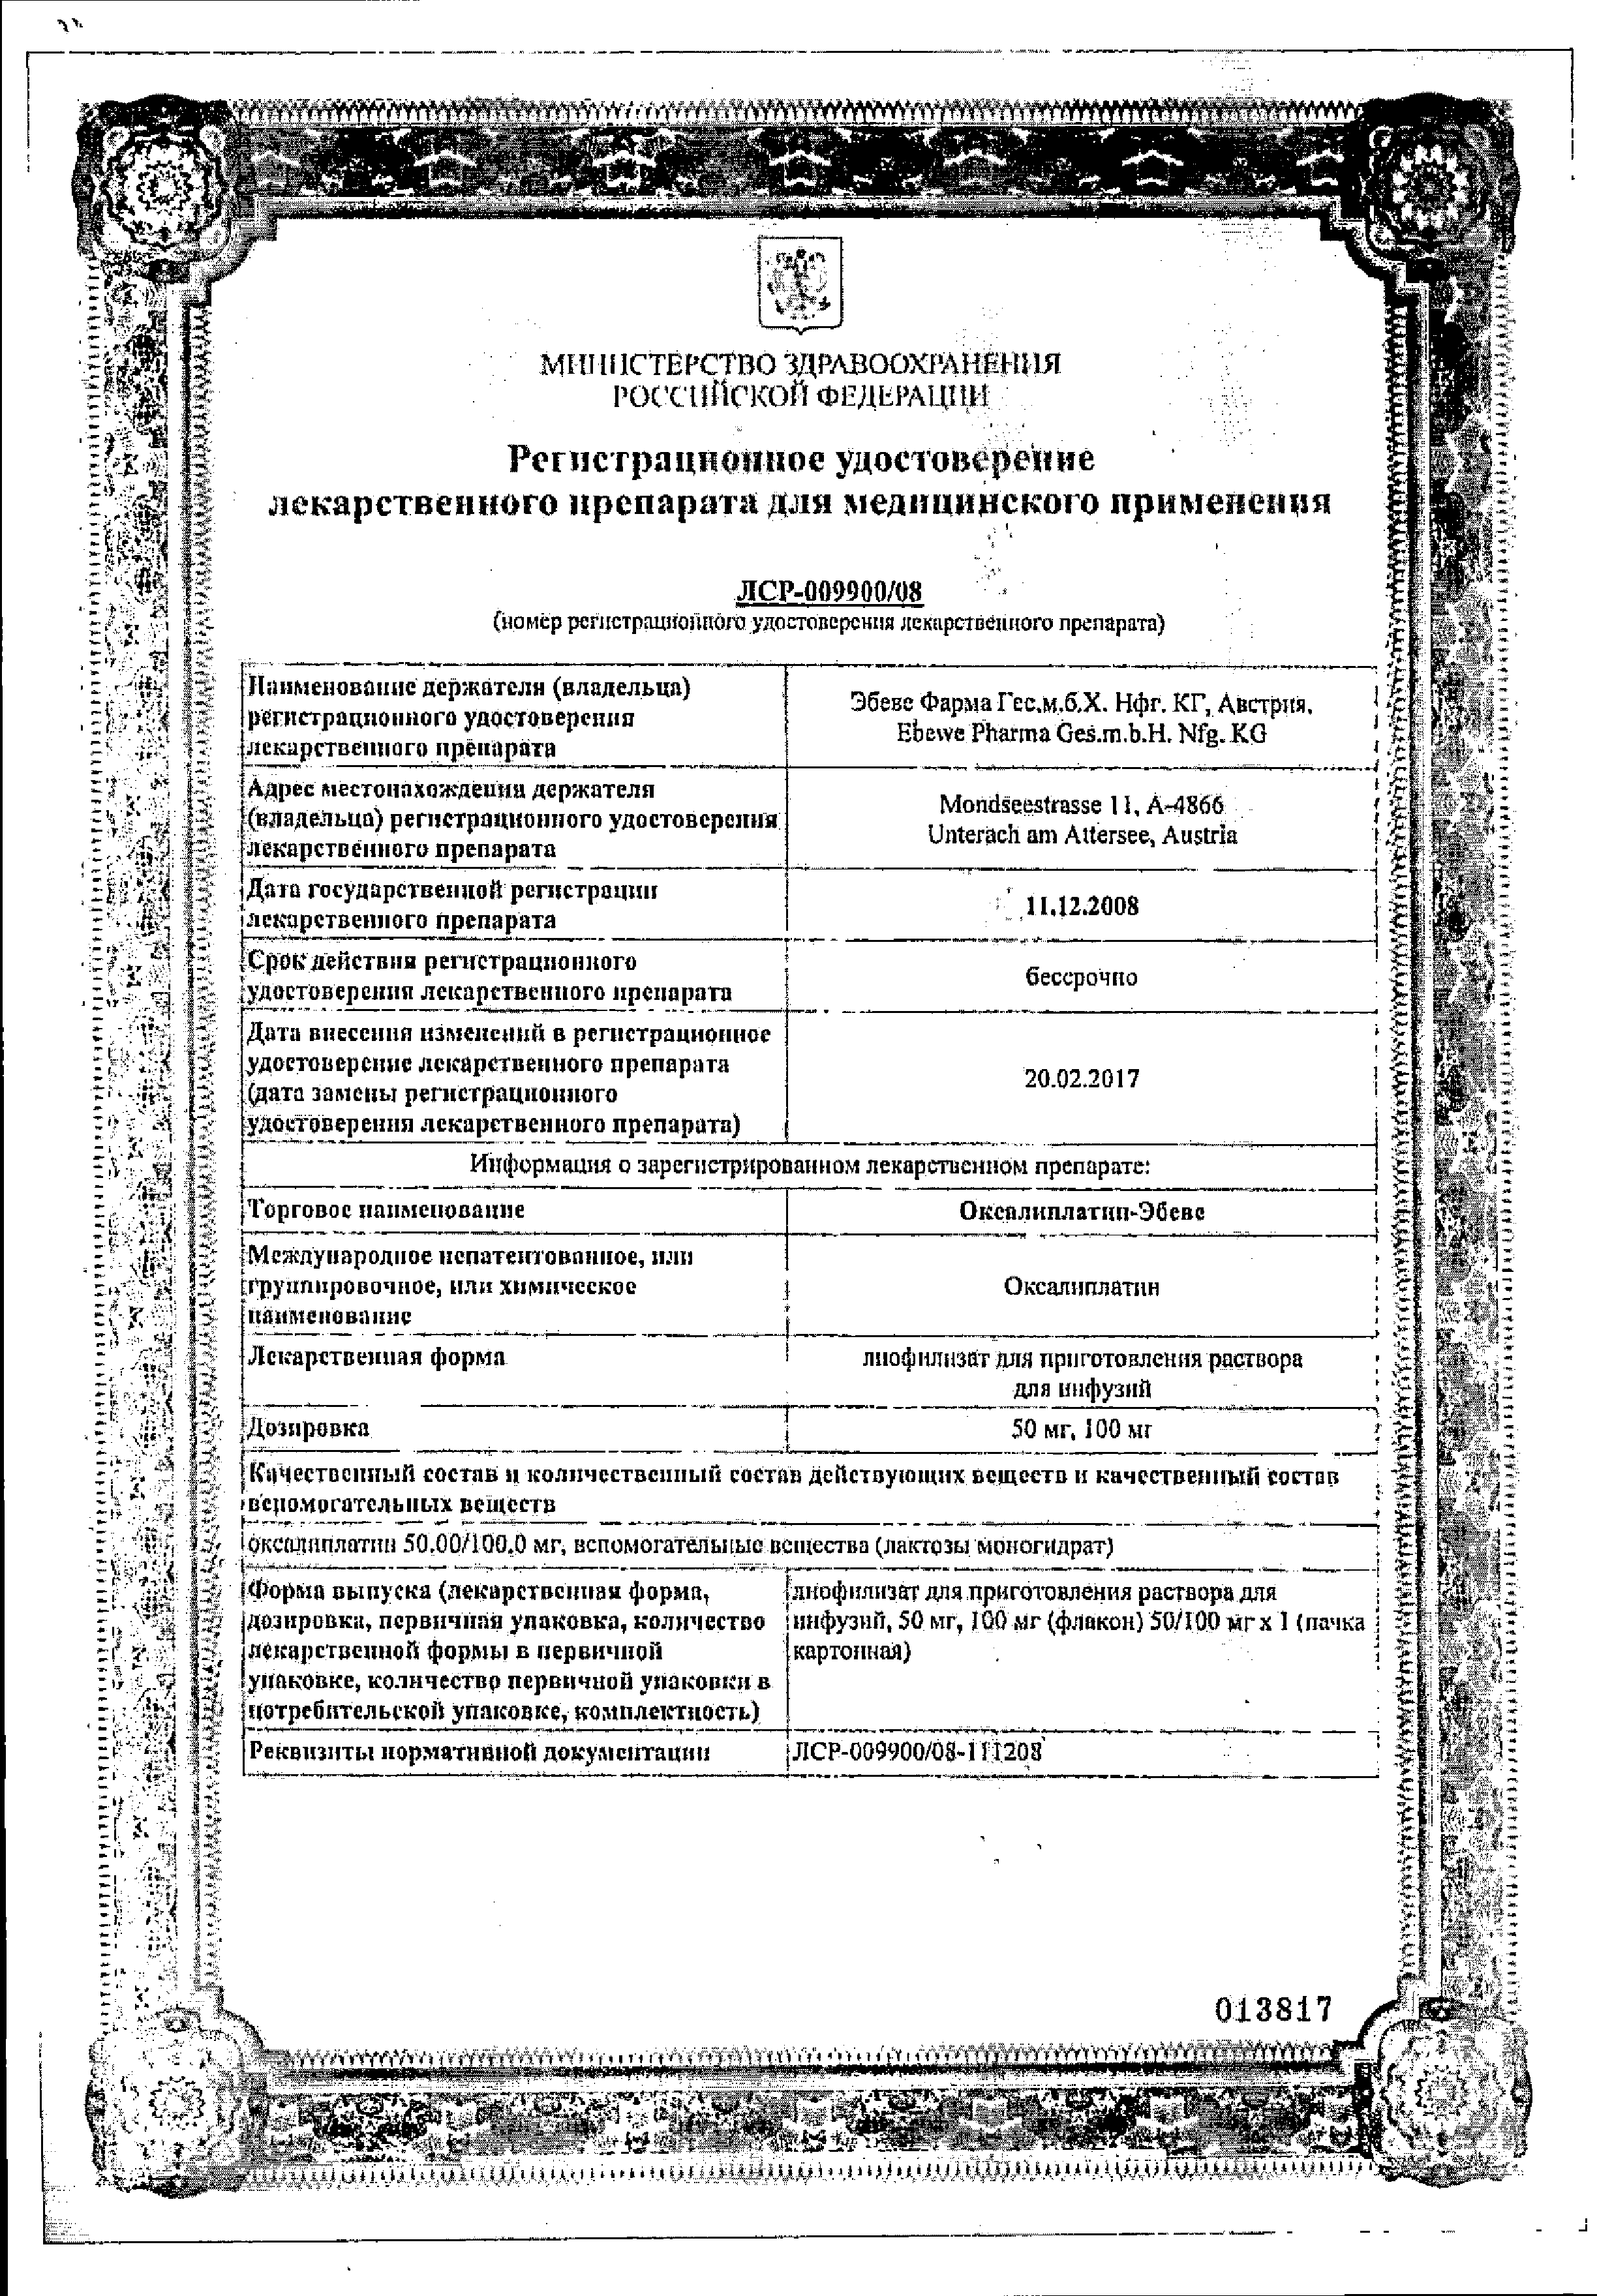 Оксалиплатин-Эбеве сертификат